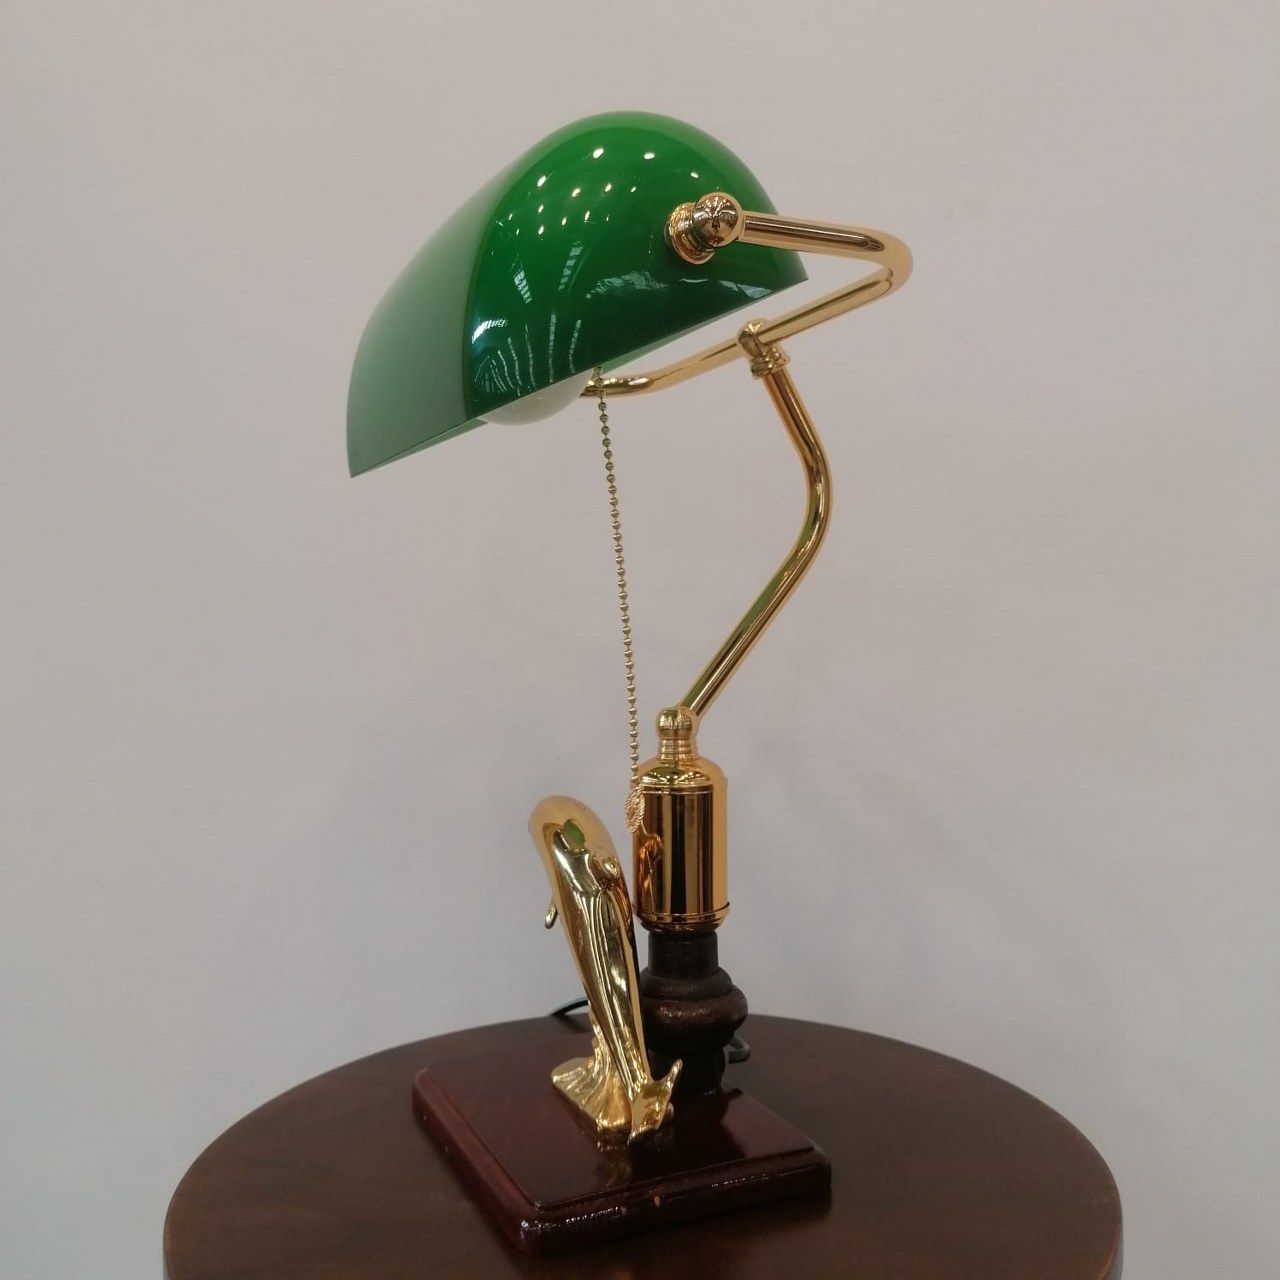 Vintage Banker Lamp (Green Color)